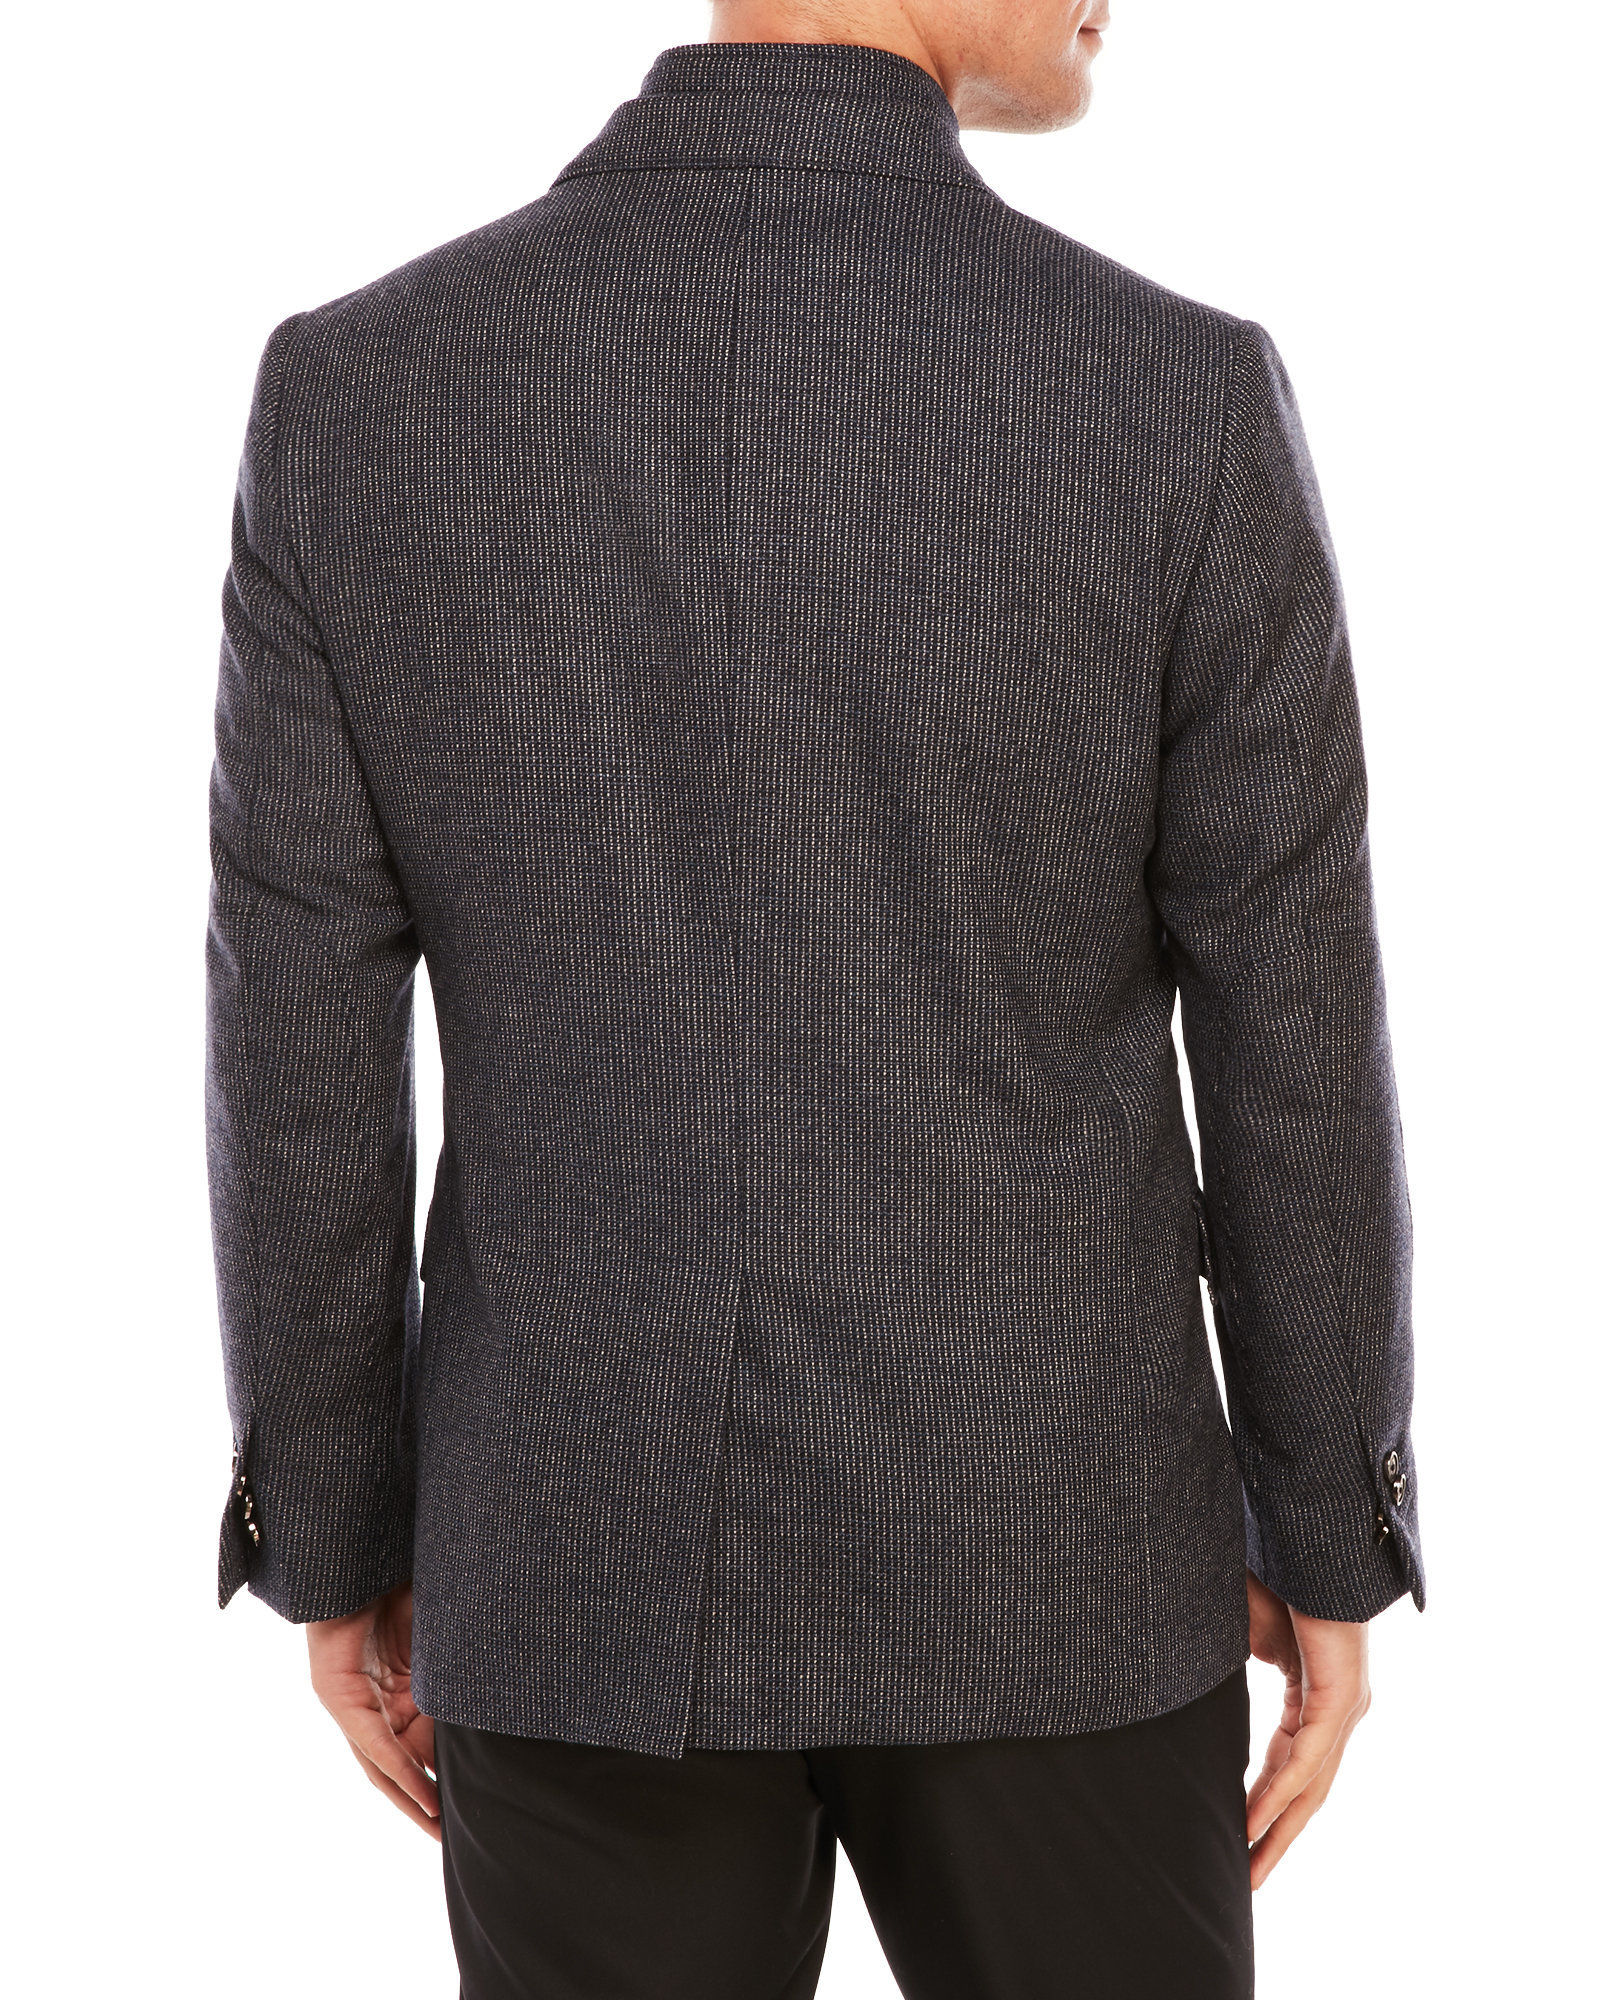 Corneliani Wool Id Jacket in Gray for Men - Lyst